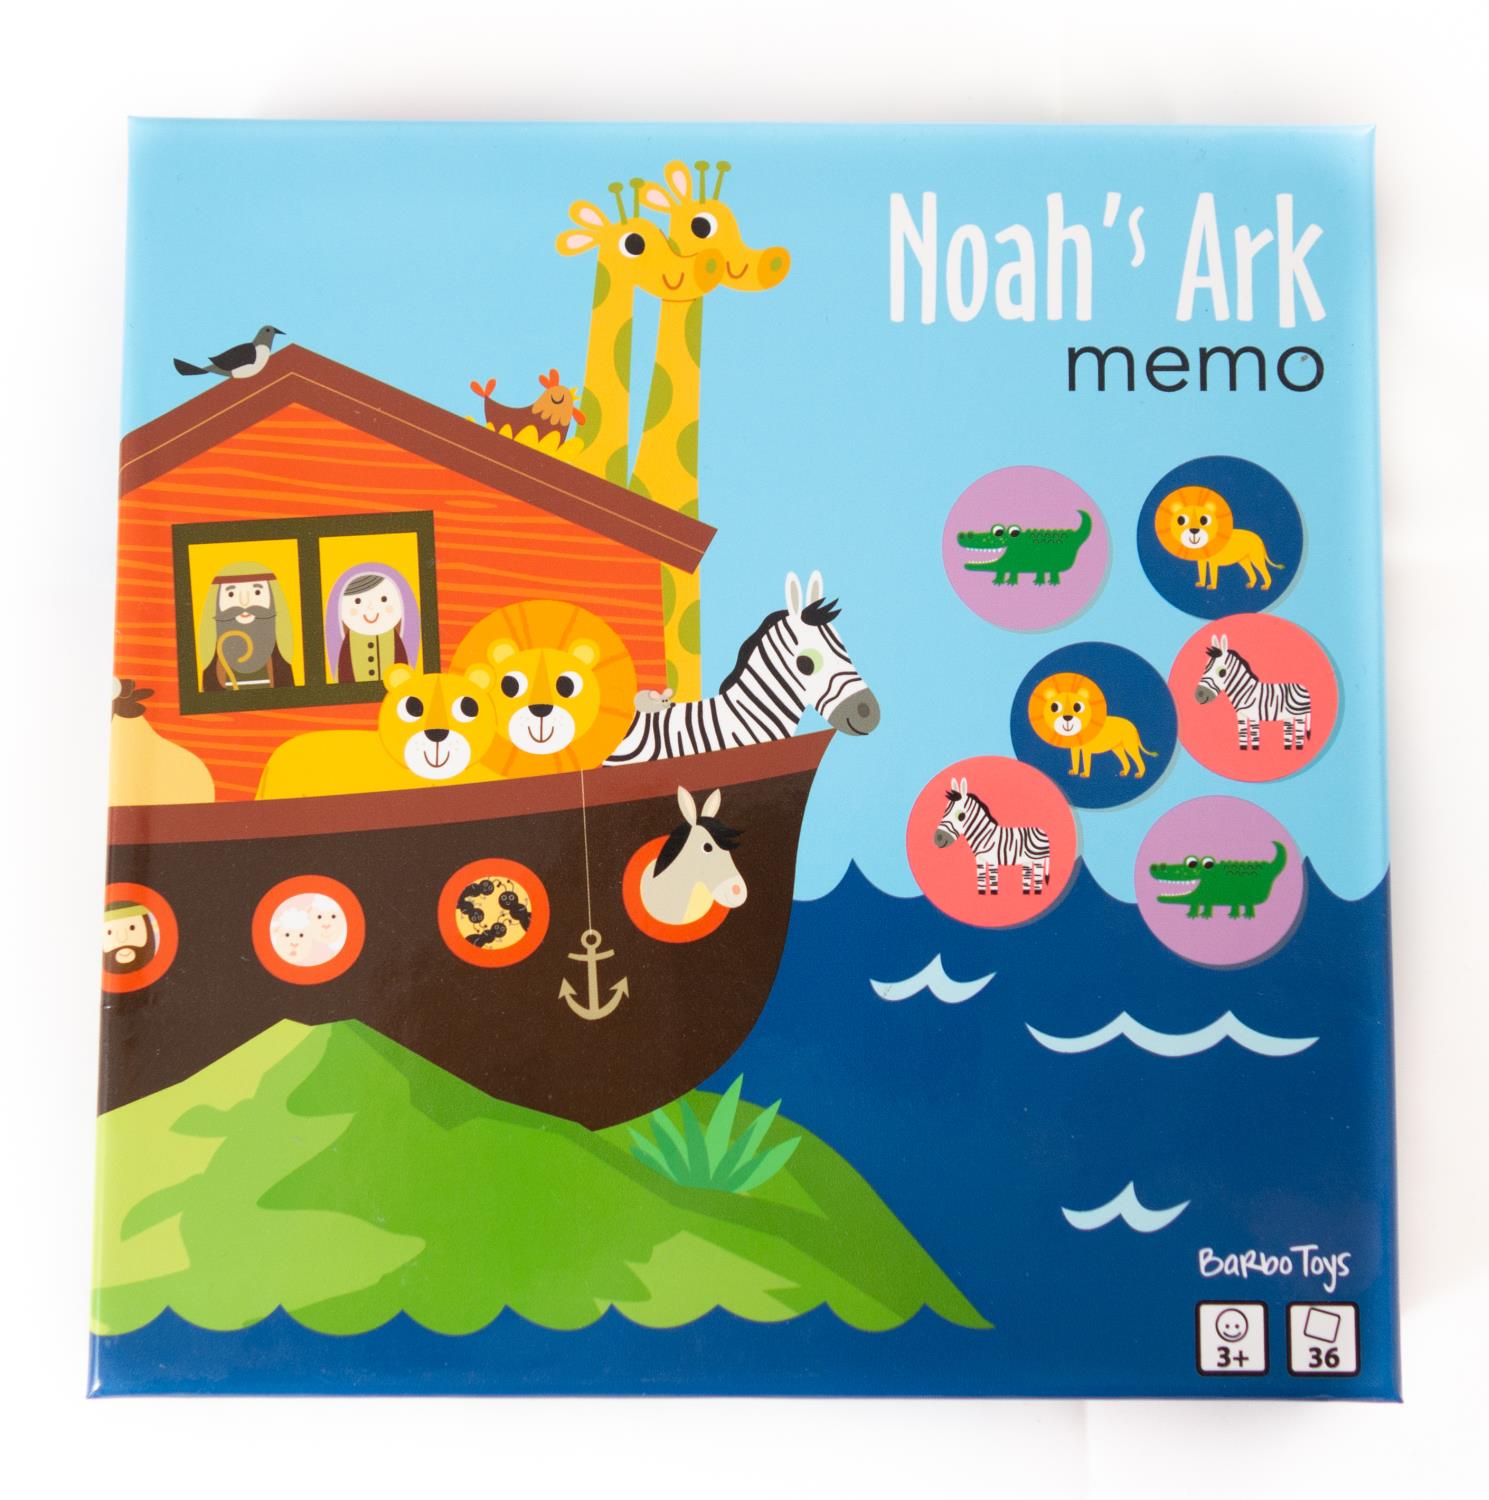 Noahs ark memo